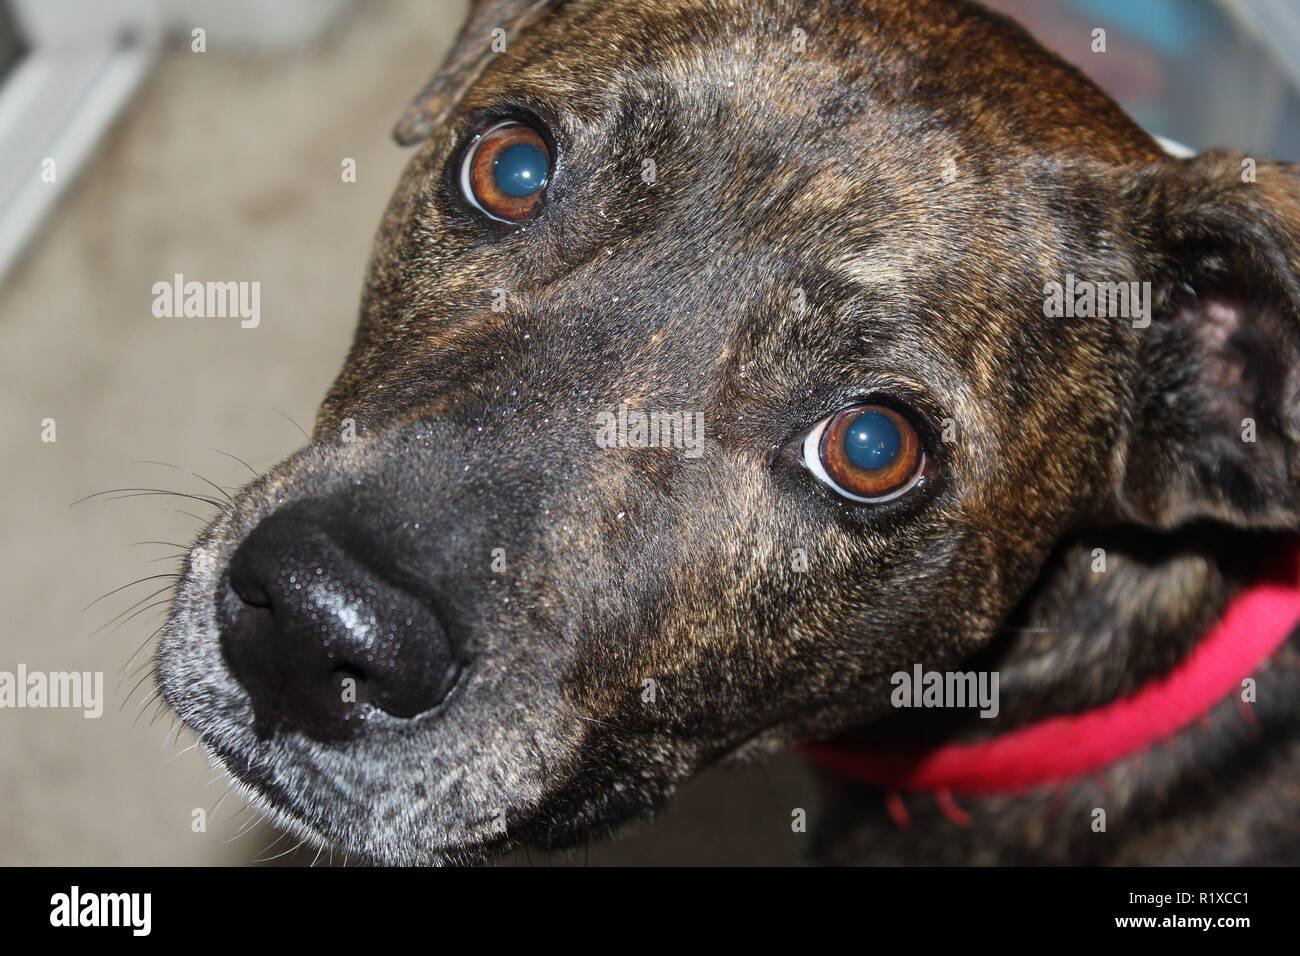 Un chien regarde l'appareil photo avec de grands yeux ronds Banque D'Images